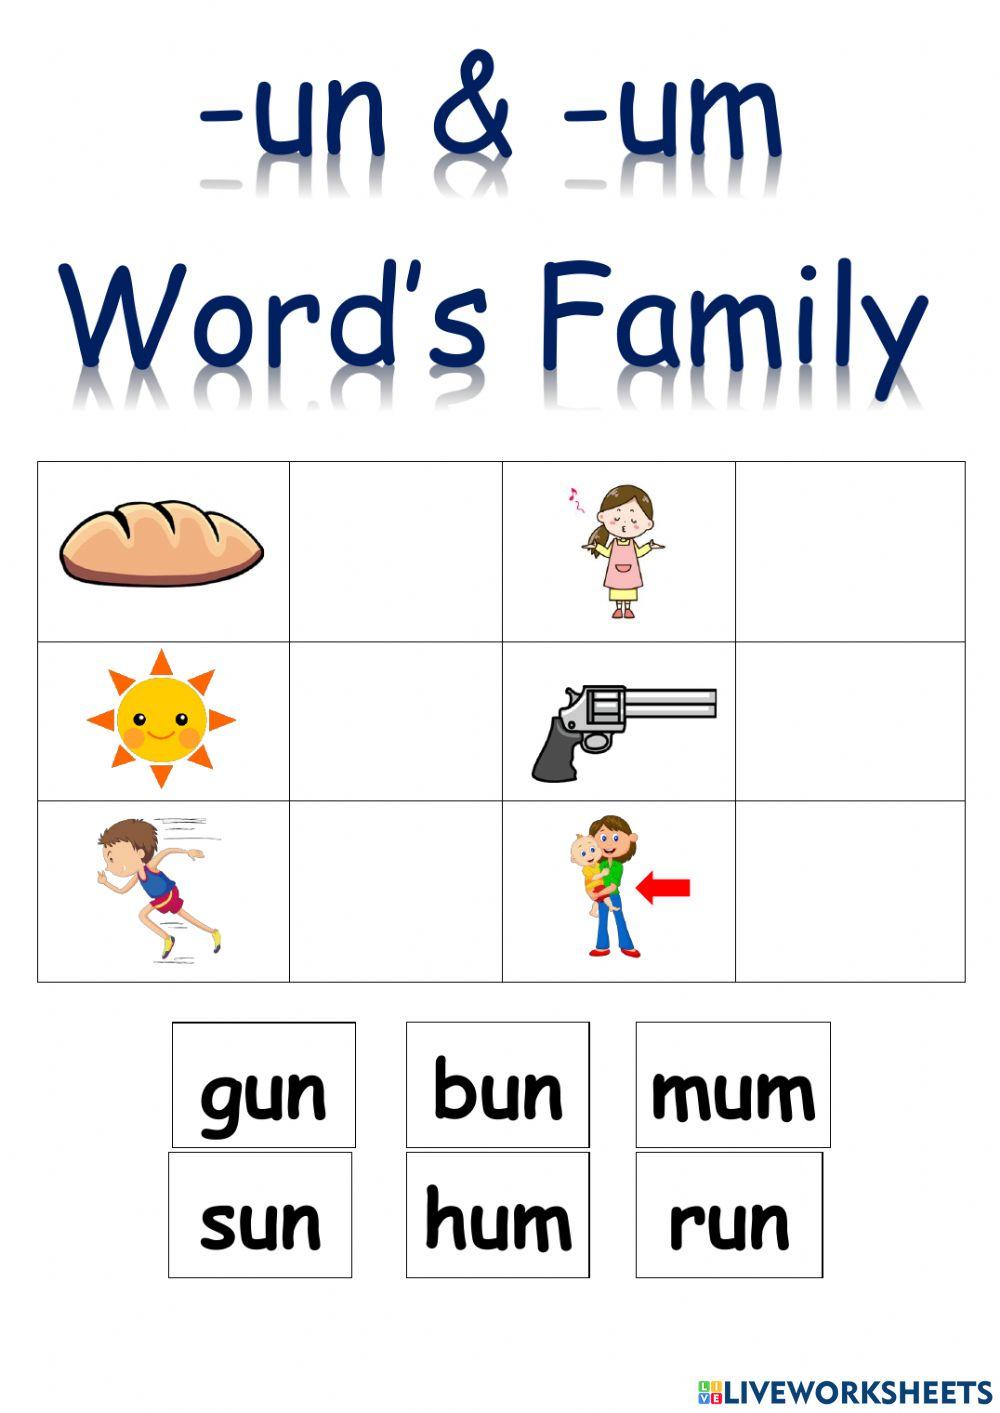 Un & um word's family